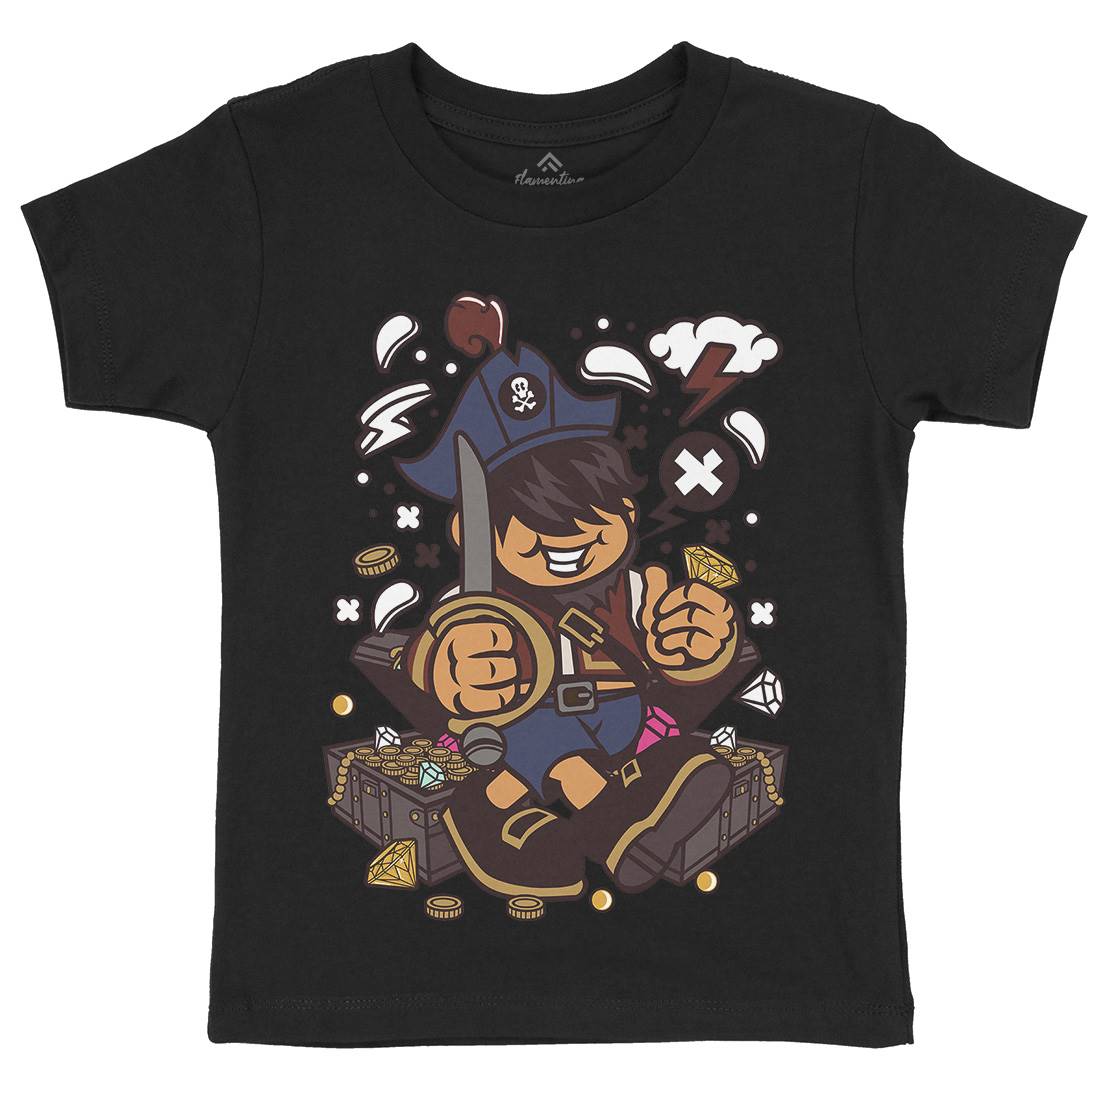 Pirate Kid Kids Organic Crew Neck T-Shirt Navy C191